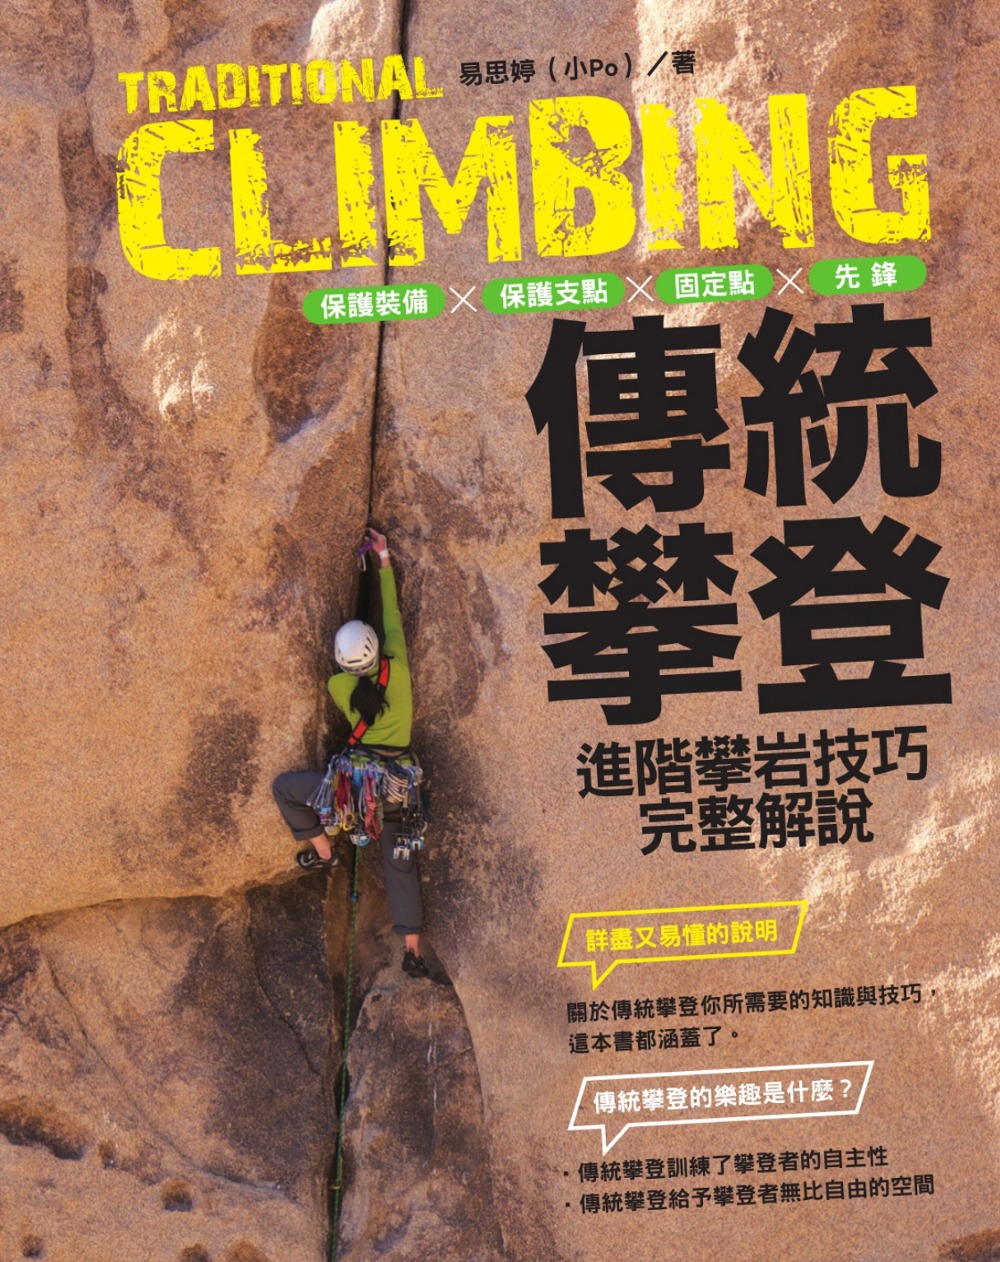 傳統攀登：保護裝備、保護支點、固定點、先鋒，進階攀岩技巧完整解說 (電子書)